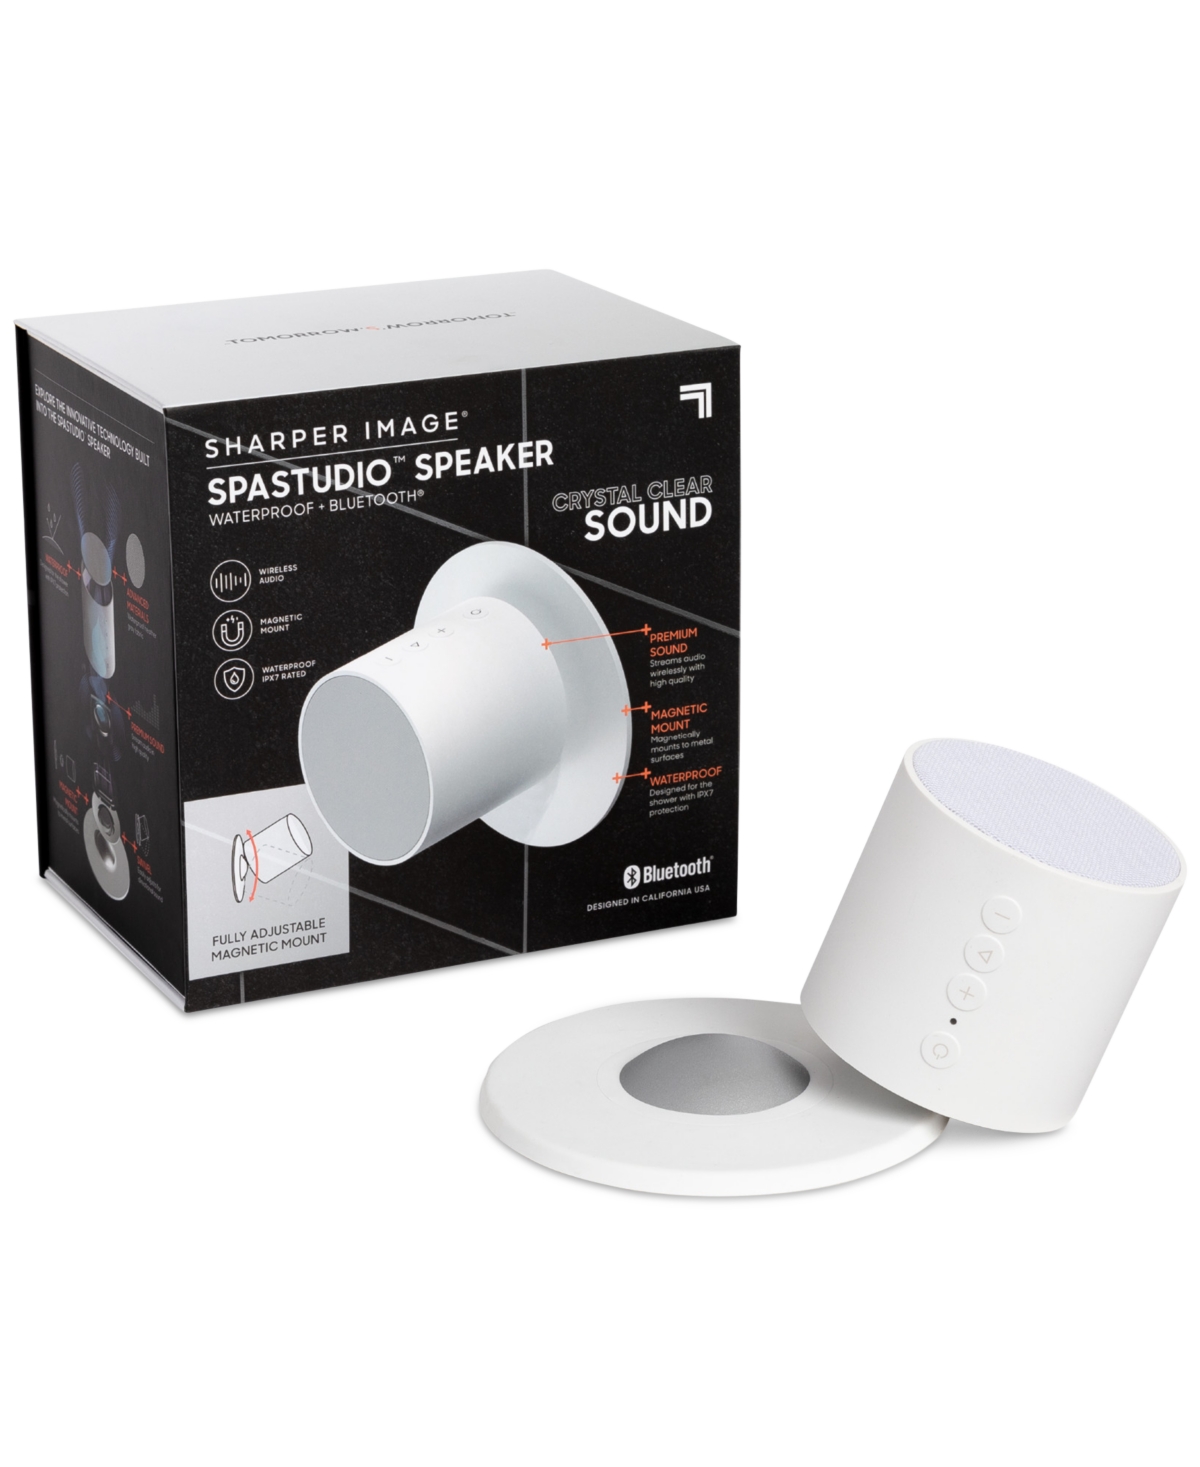 Sharper Image Spastudio Waterproof Bluetooth Speaker In White